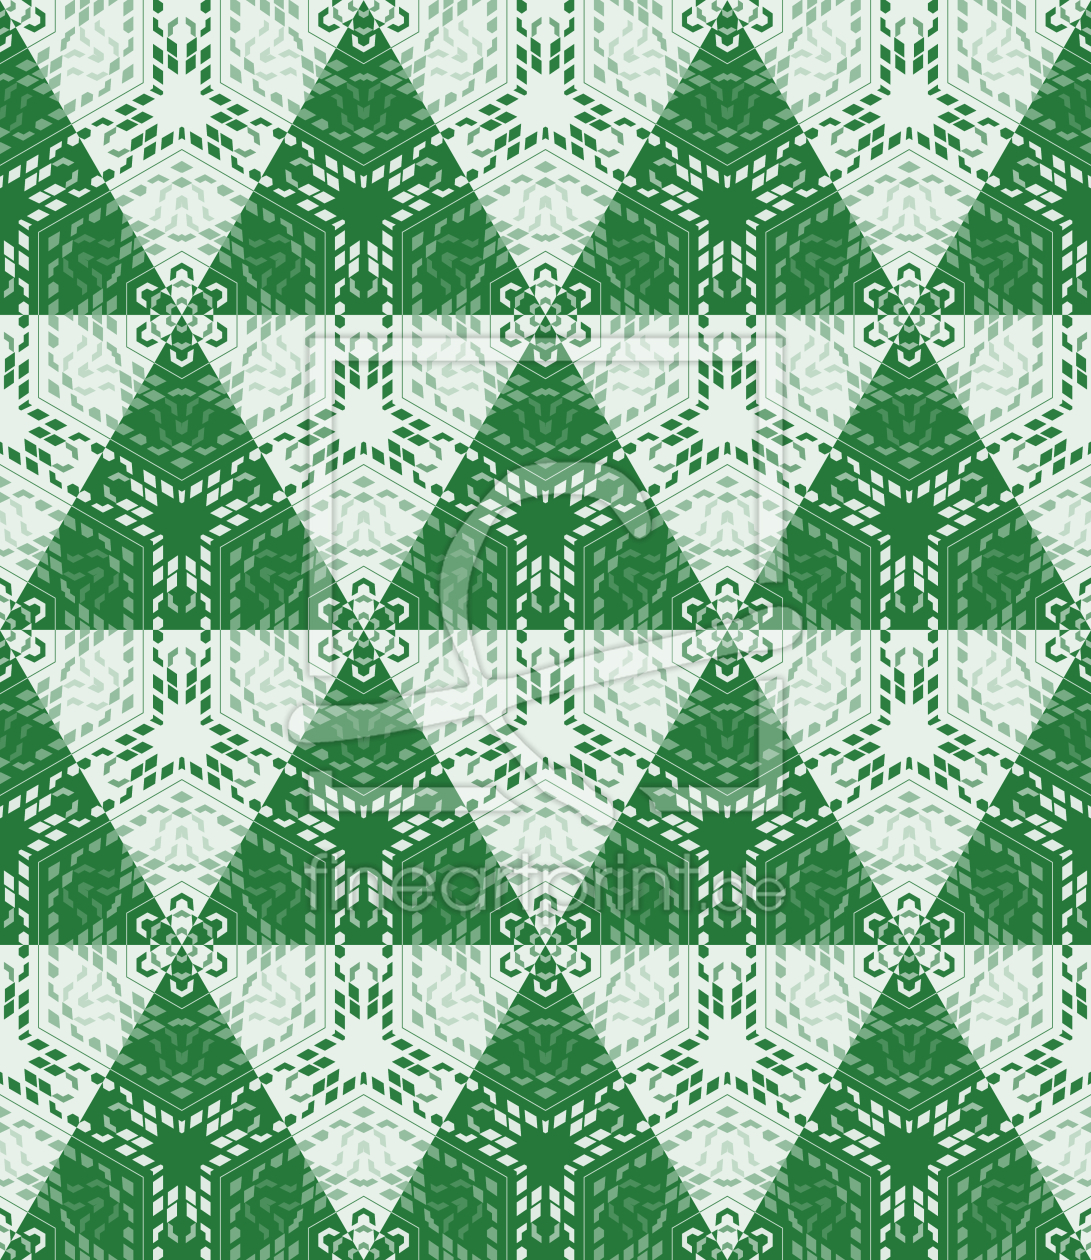 Bild-Nr.: 9014813 Festliche Weihnachtsbäume erstellt von patterndesigns-com